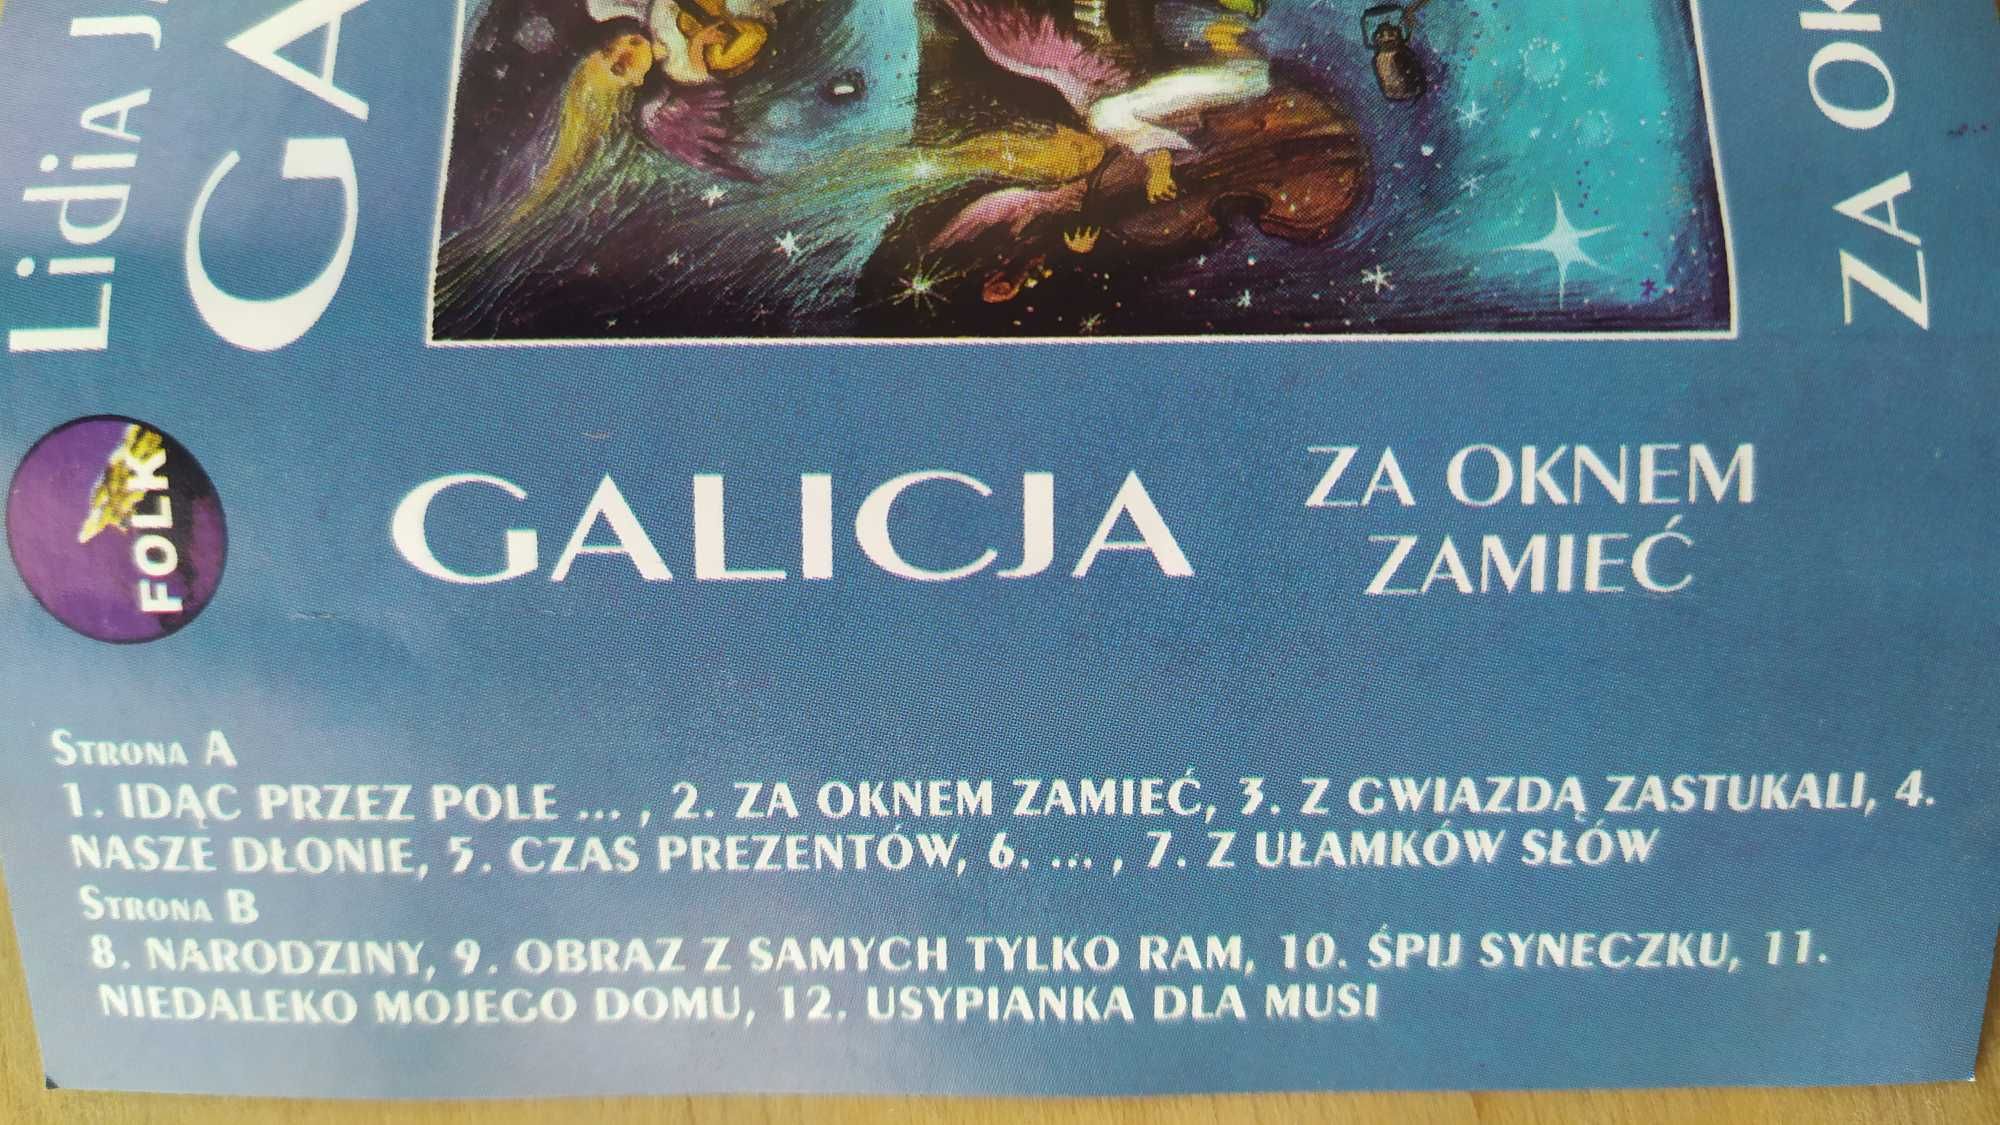 Lidia Jazgar z zespołem Galicja Za oknem zamieć kaseta MC